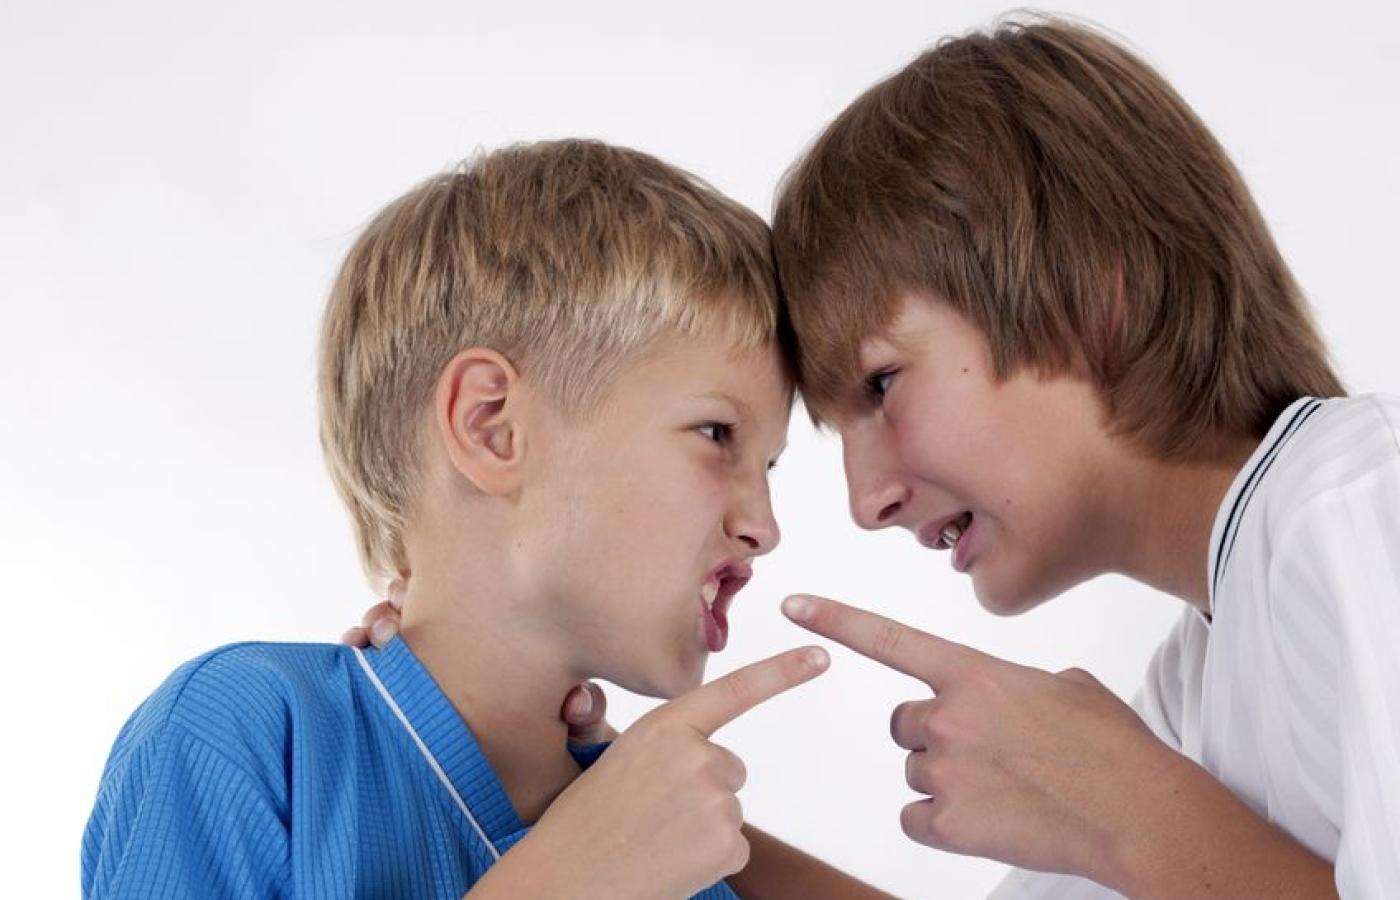 Подростки спорят. Конфликт между детьми. Конфликт между мальчиками. Конфликты в подростковом возрасте. Два мальчика спорят.